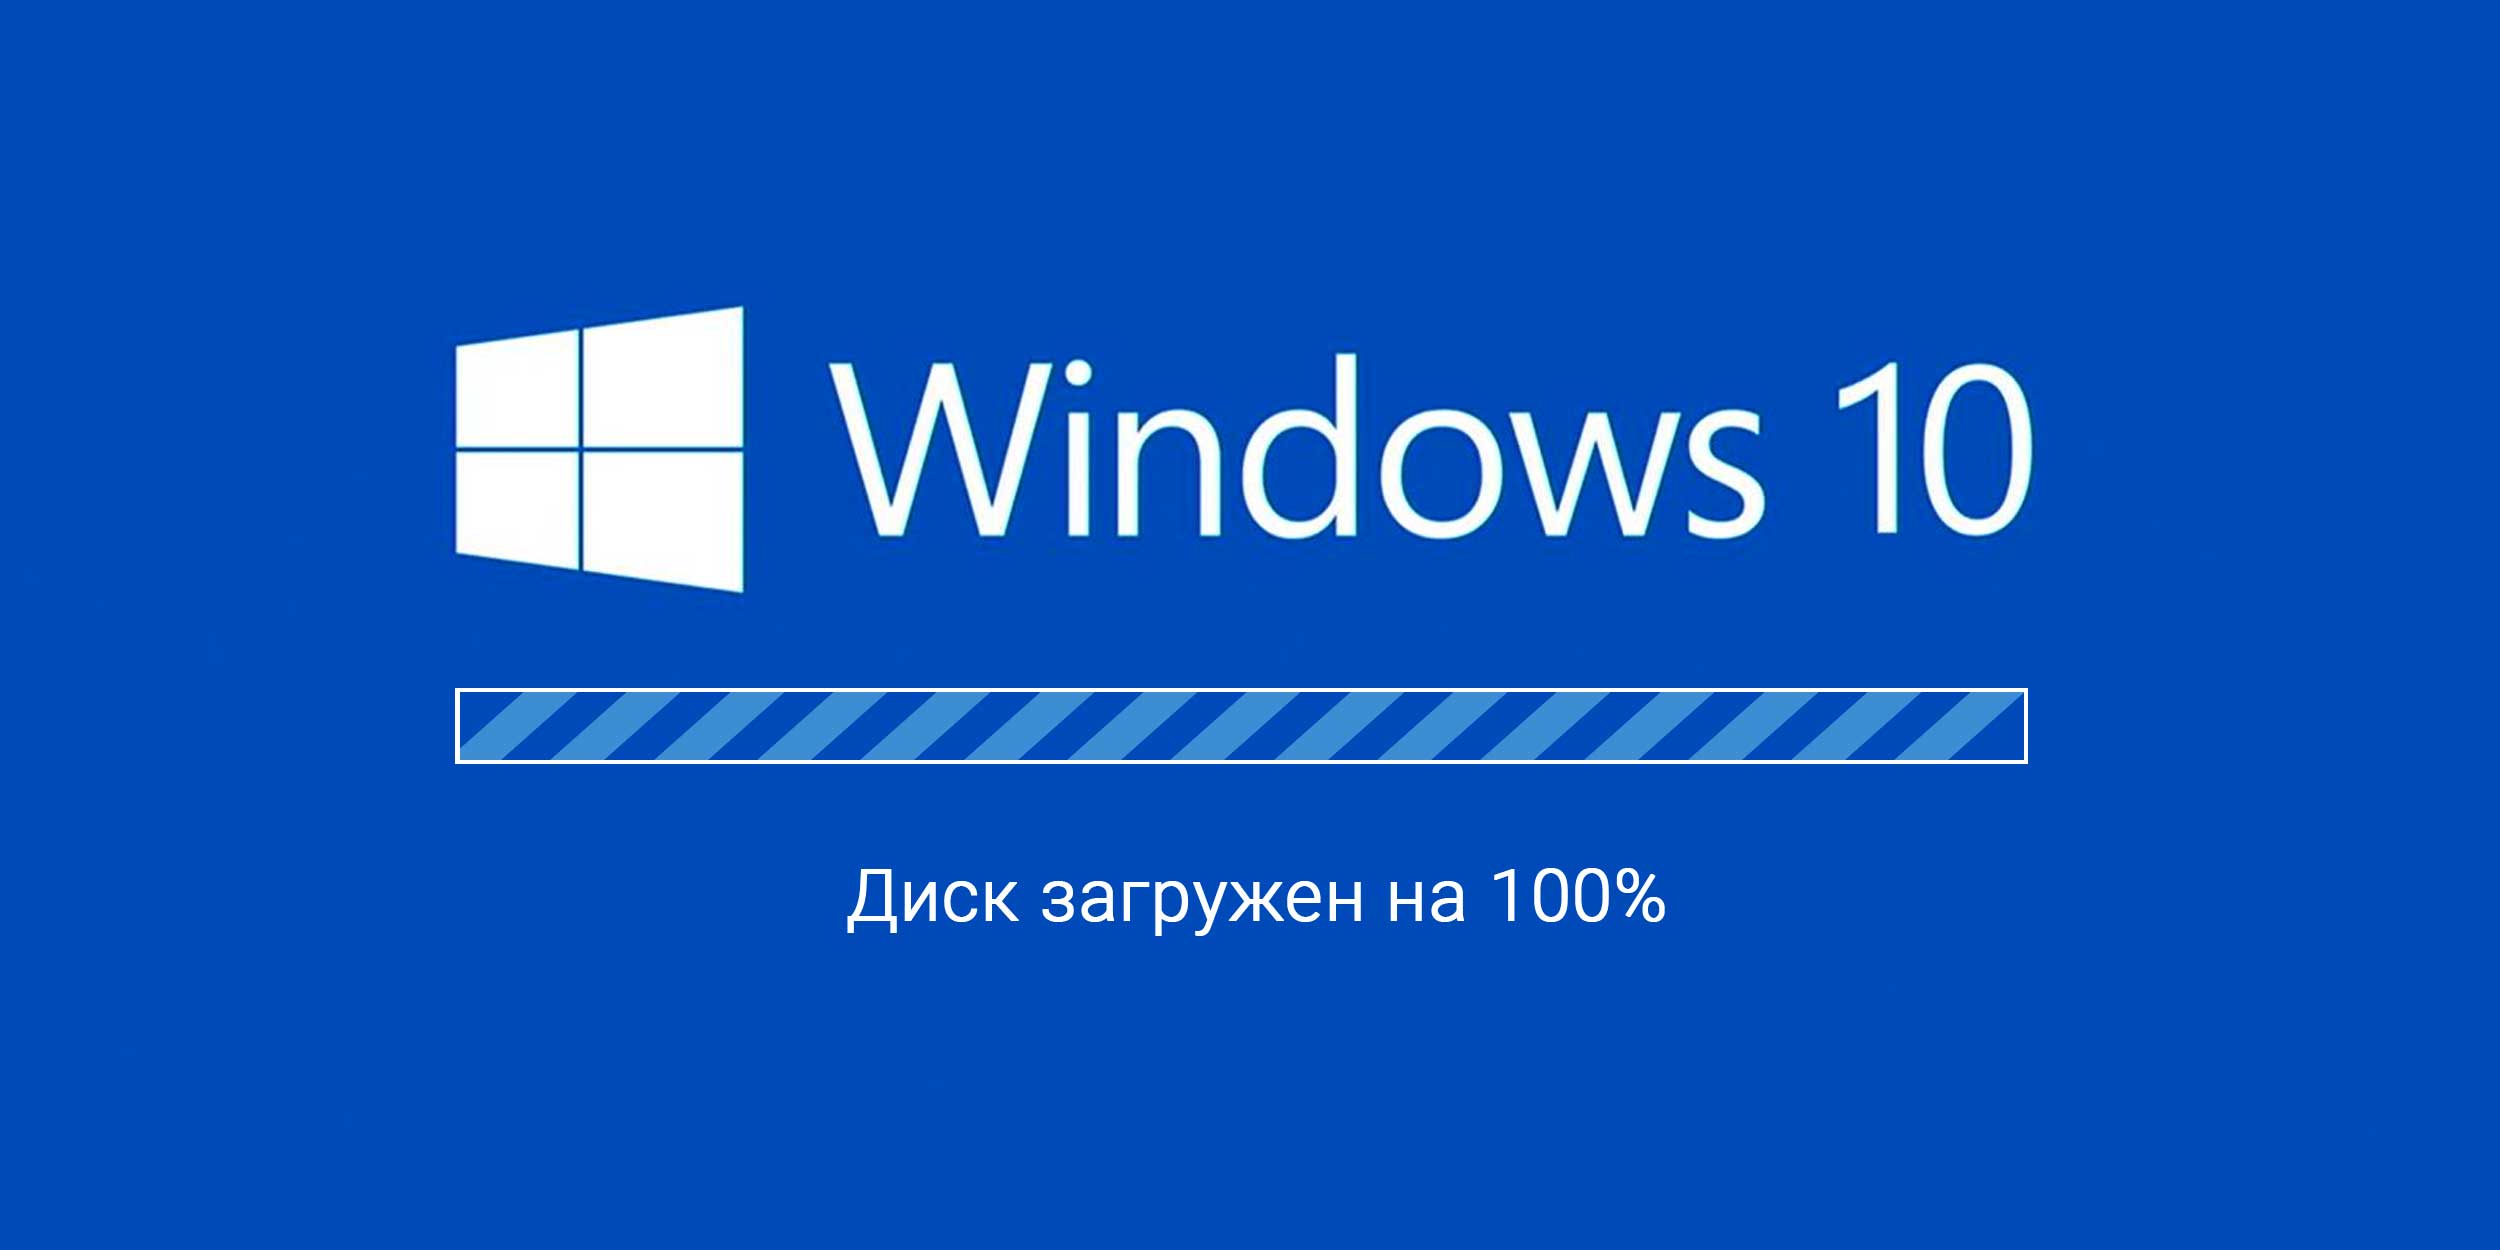 Диск загружен на 100% процентов в диспетчере задач Windows — что делать?